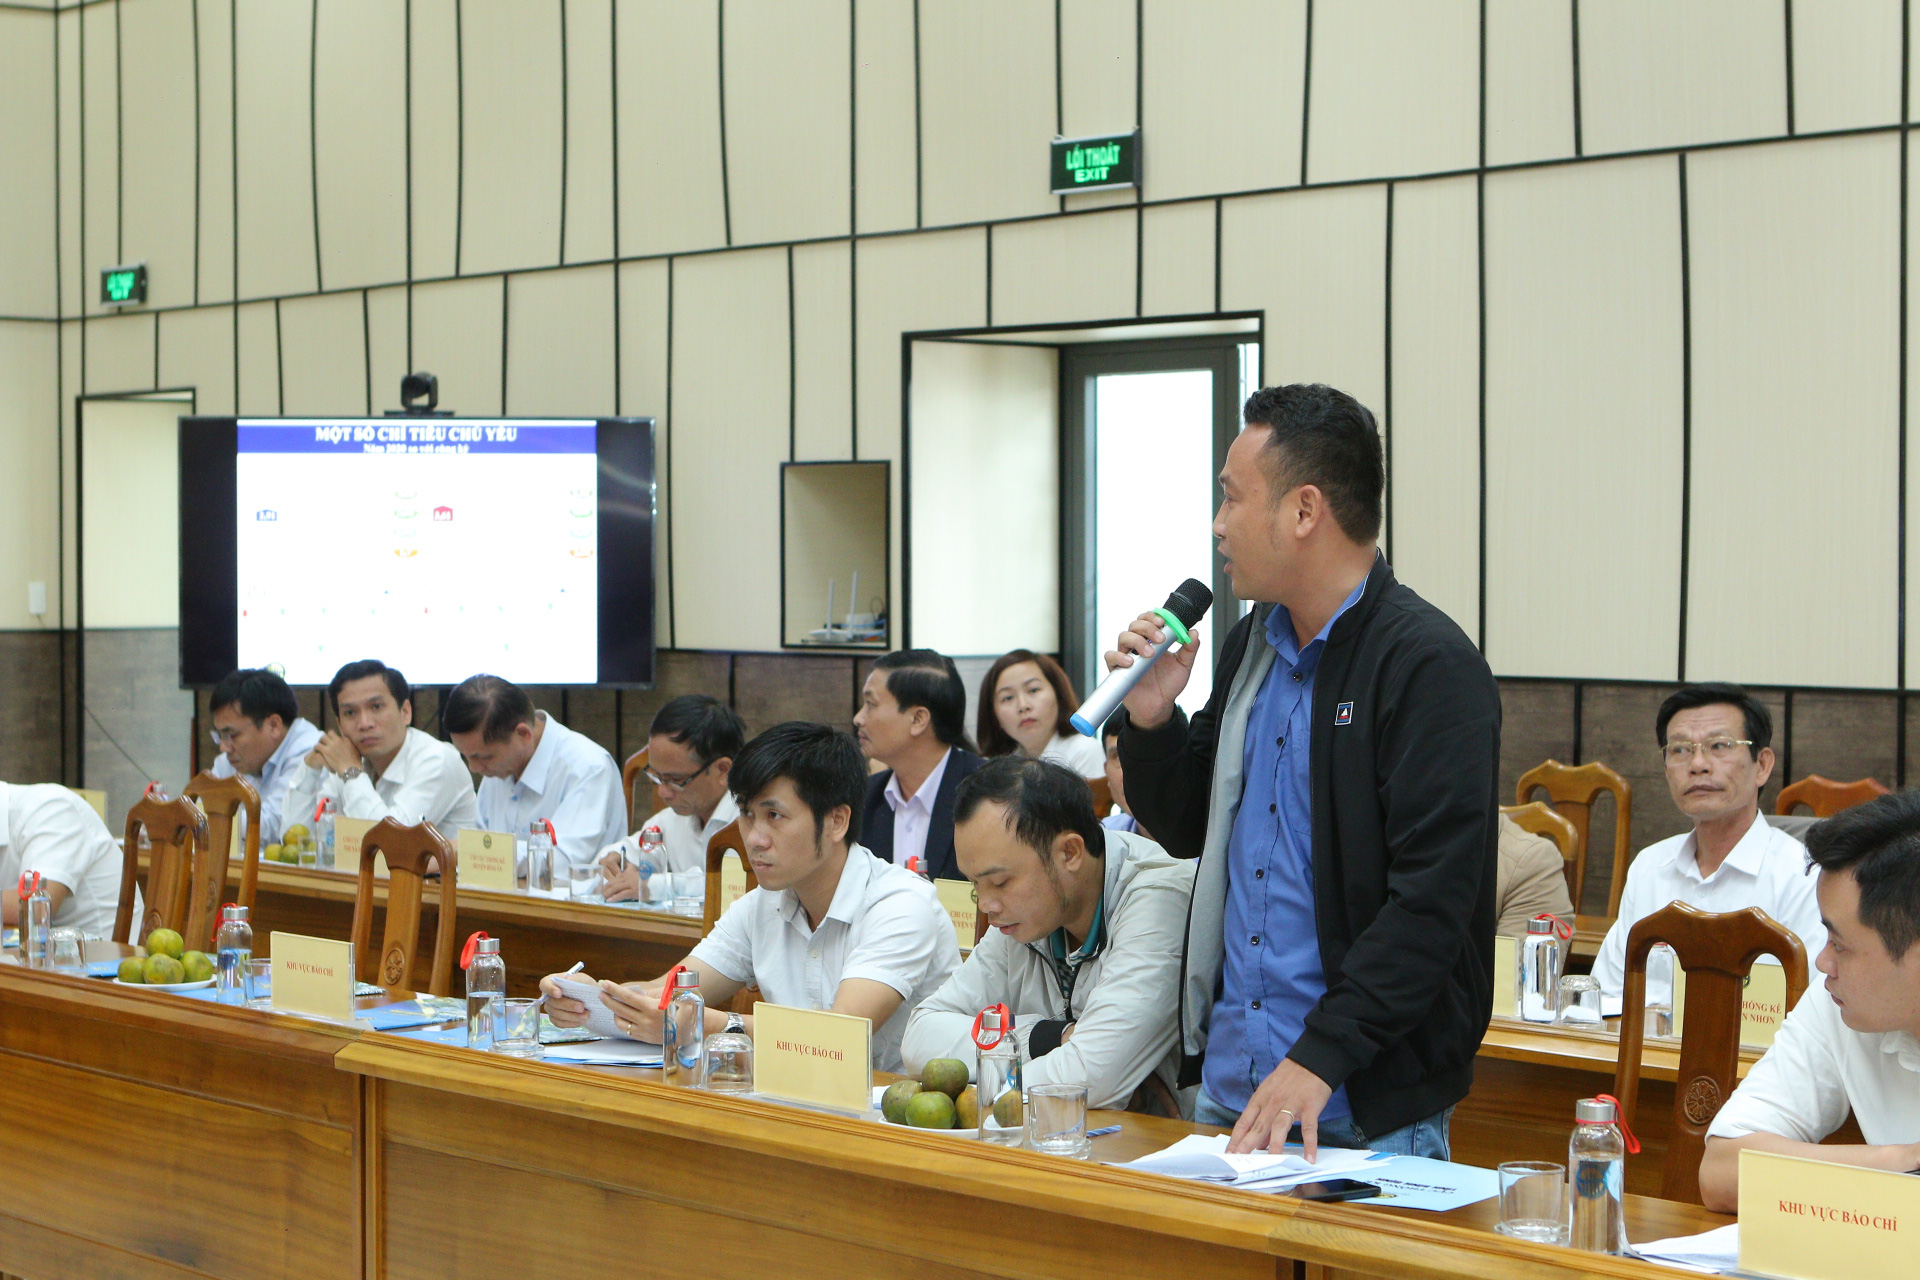 Kinh tế Bình Định trải qua 1 năm đầy “sóng gió”, hơn 350 doanh nghiệp tạm dừng hoạt động - Ảnh 4.